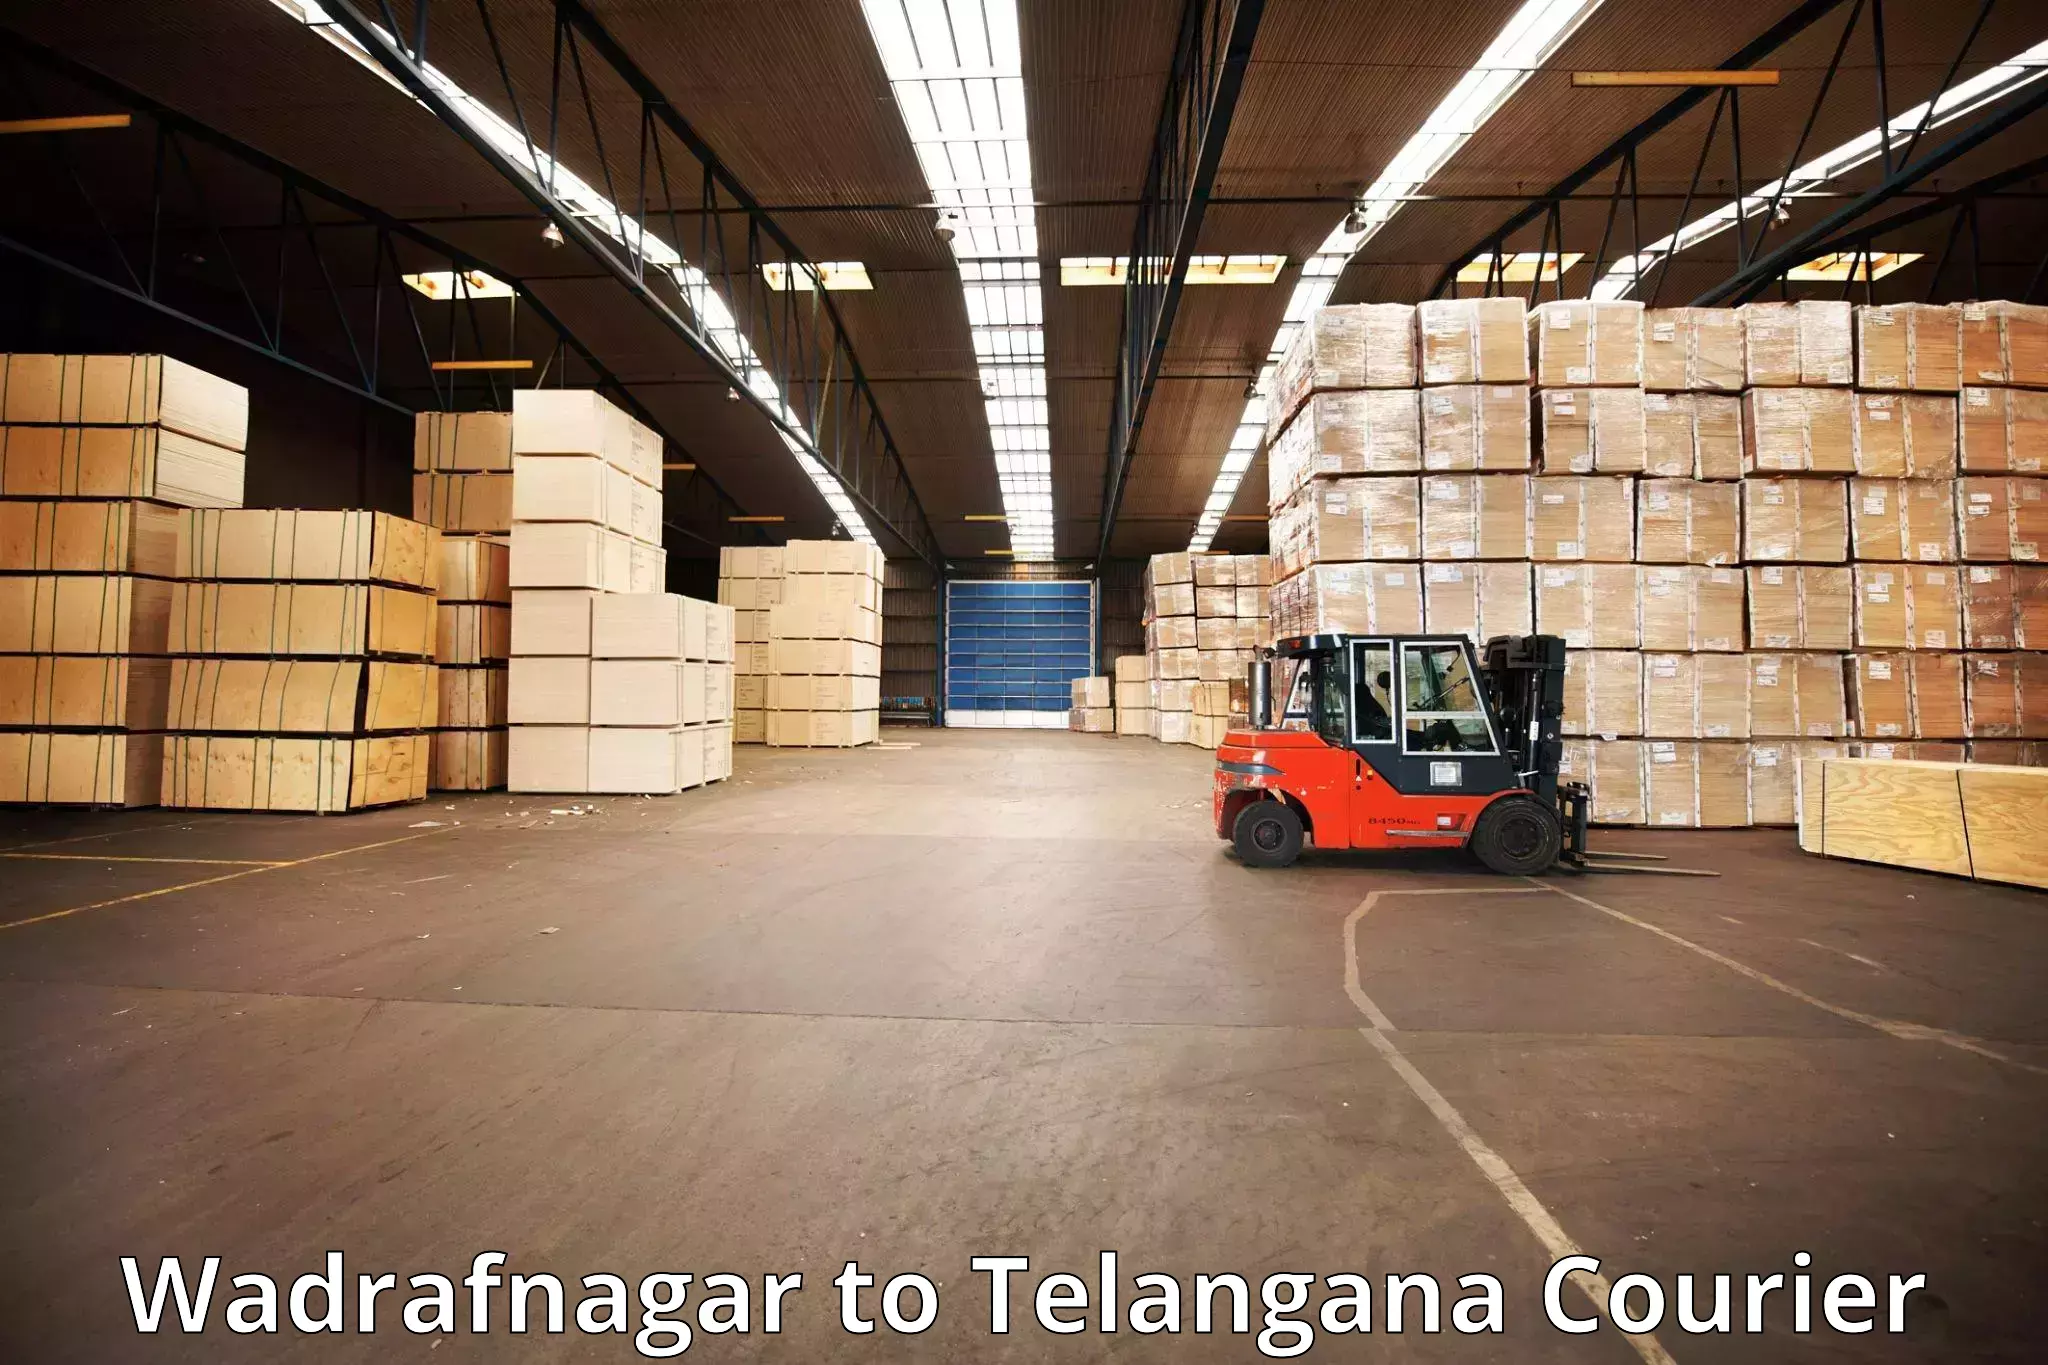 Baggage transport network Wadrafnagar to Yerrupalem